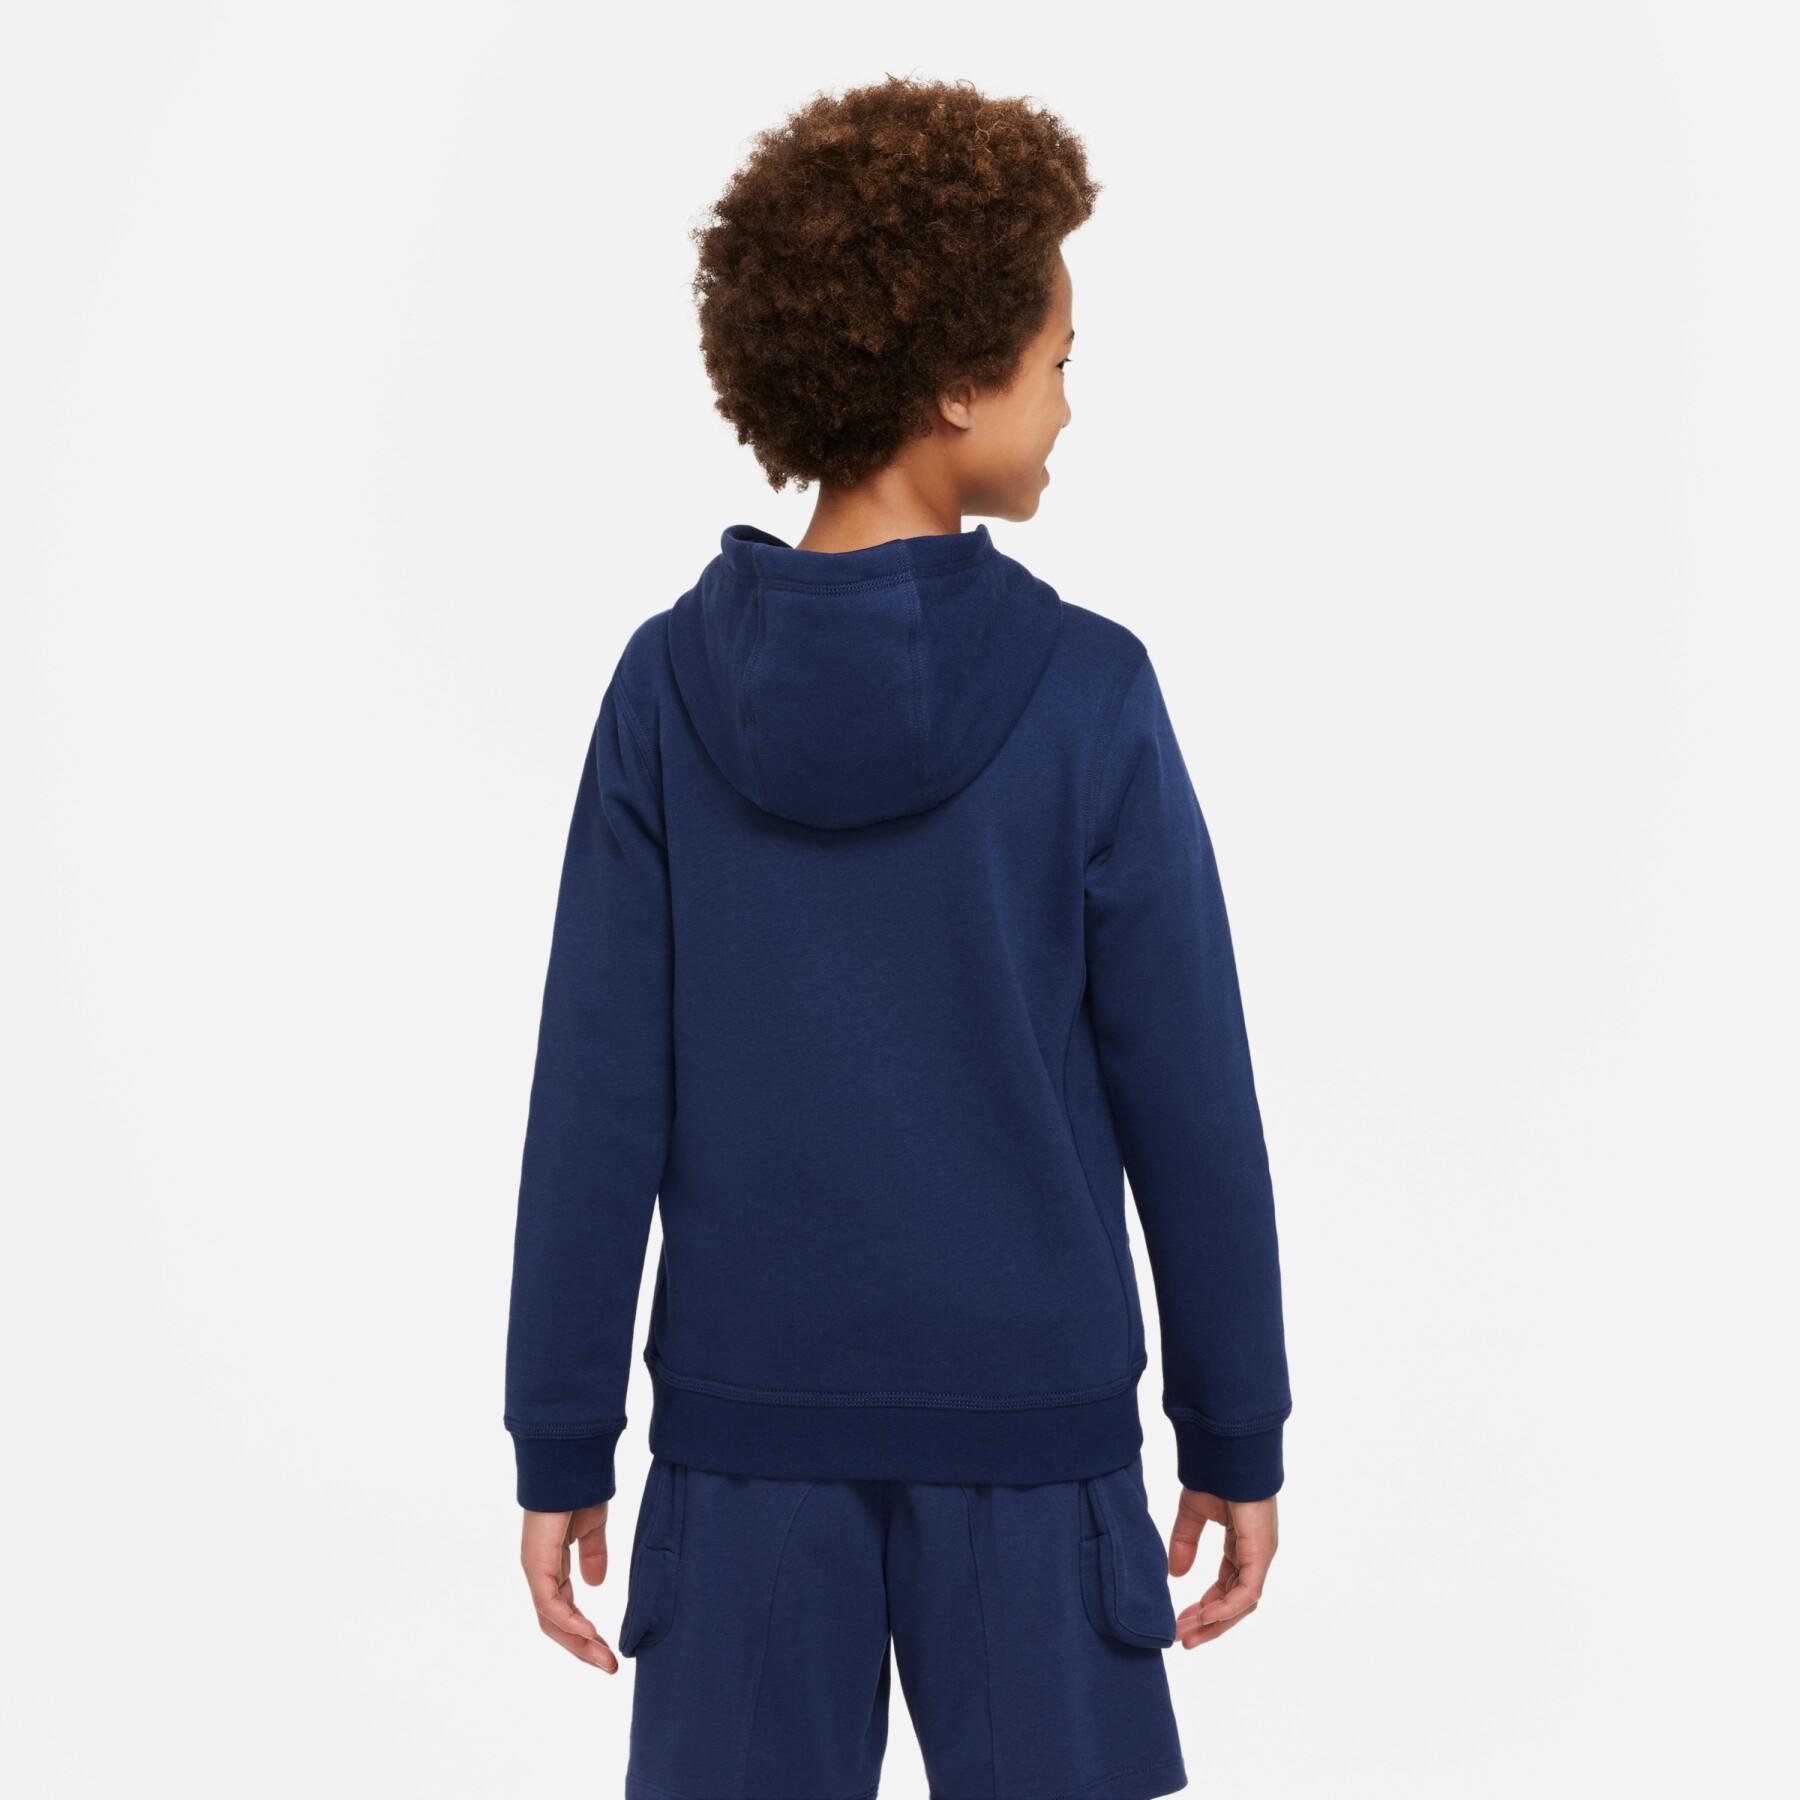 Sweatshirt Kind Nike Sportswear Sos Fleece